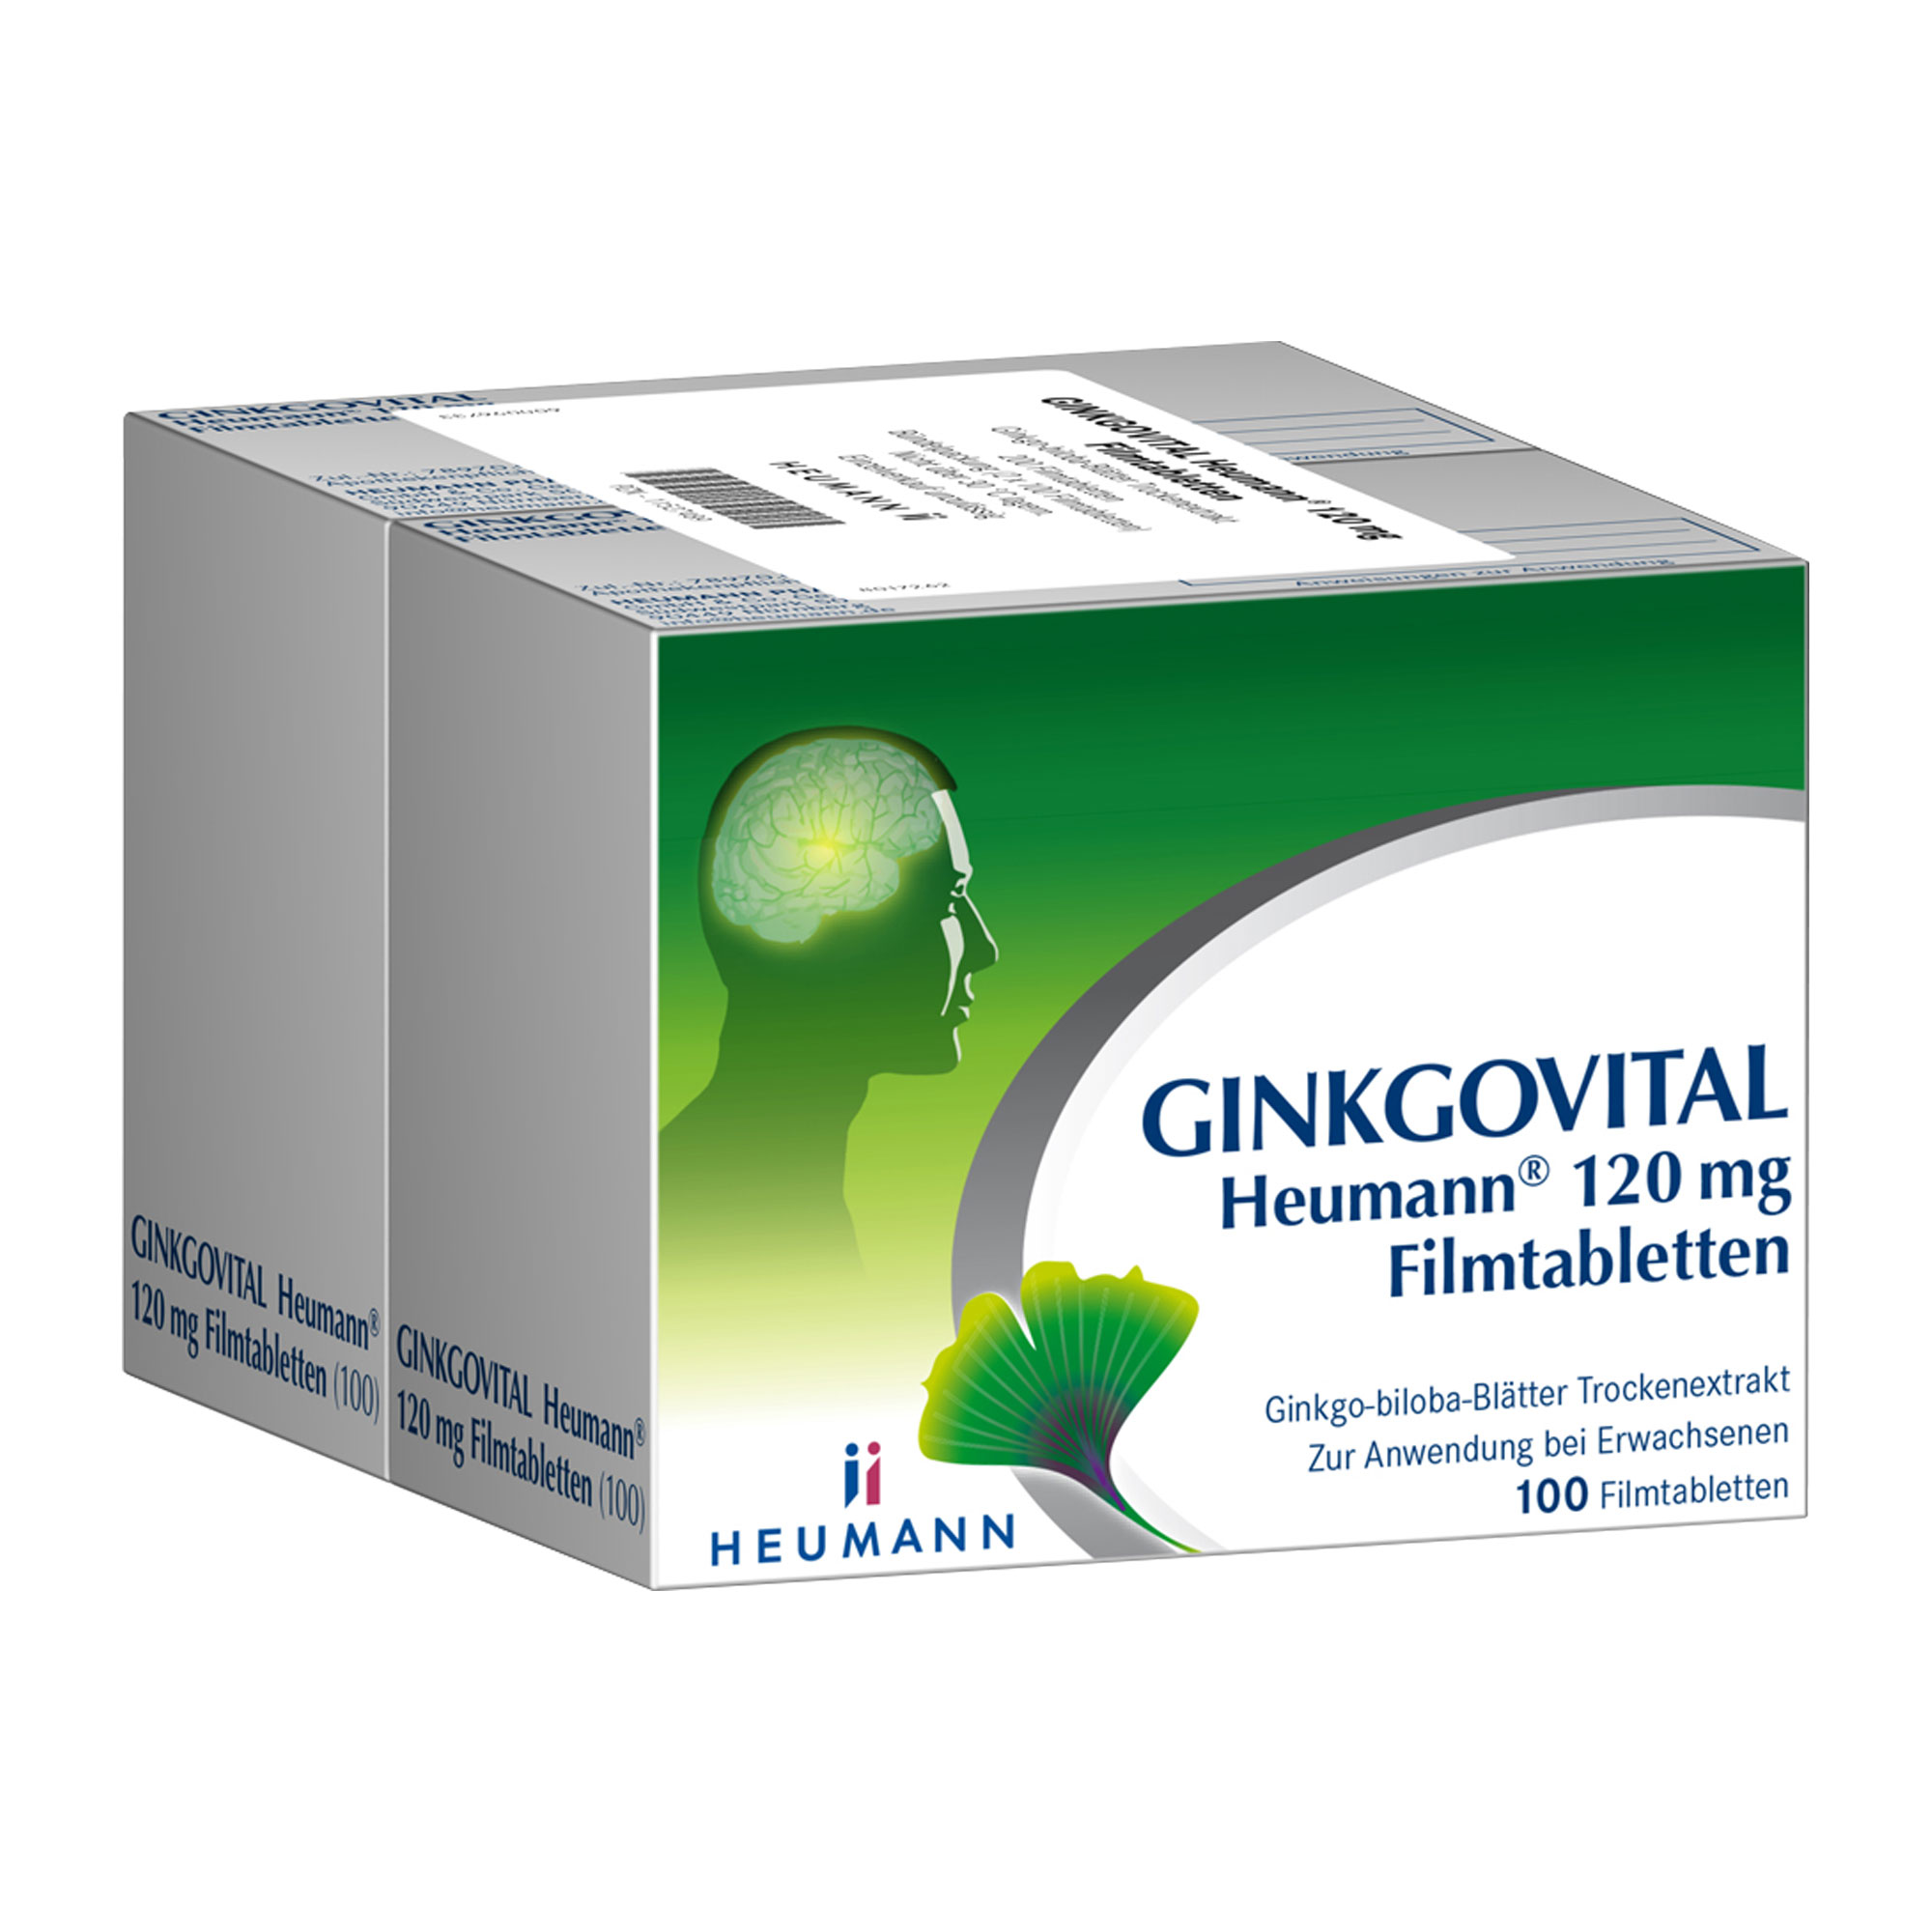 Pflanzliches Arzneimittel mit 120 mg Ginkgo-biloba-Blätter Trockenextrakt. Stärkt Gedächtnis und Konzentration.